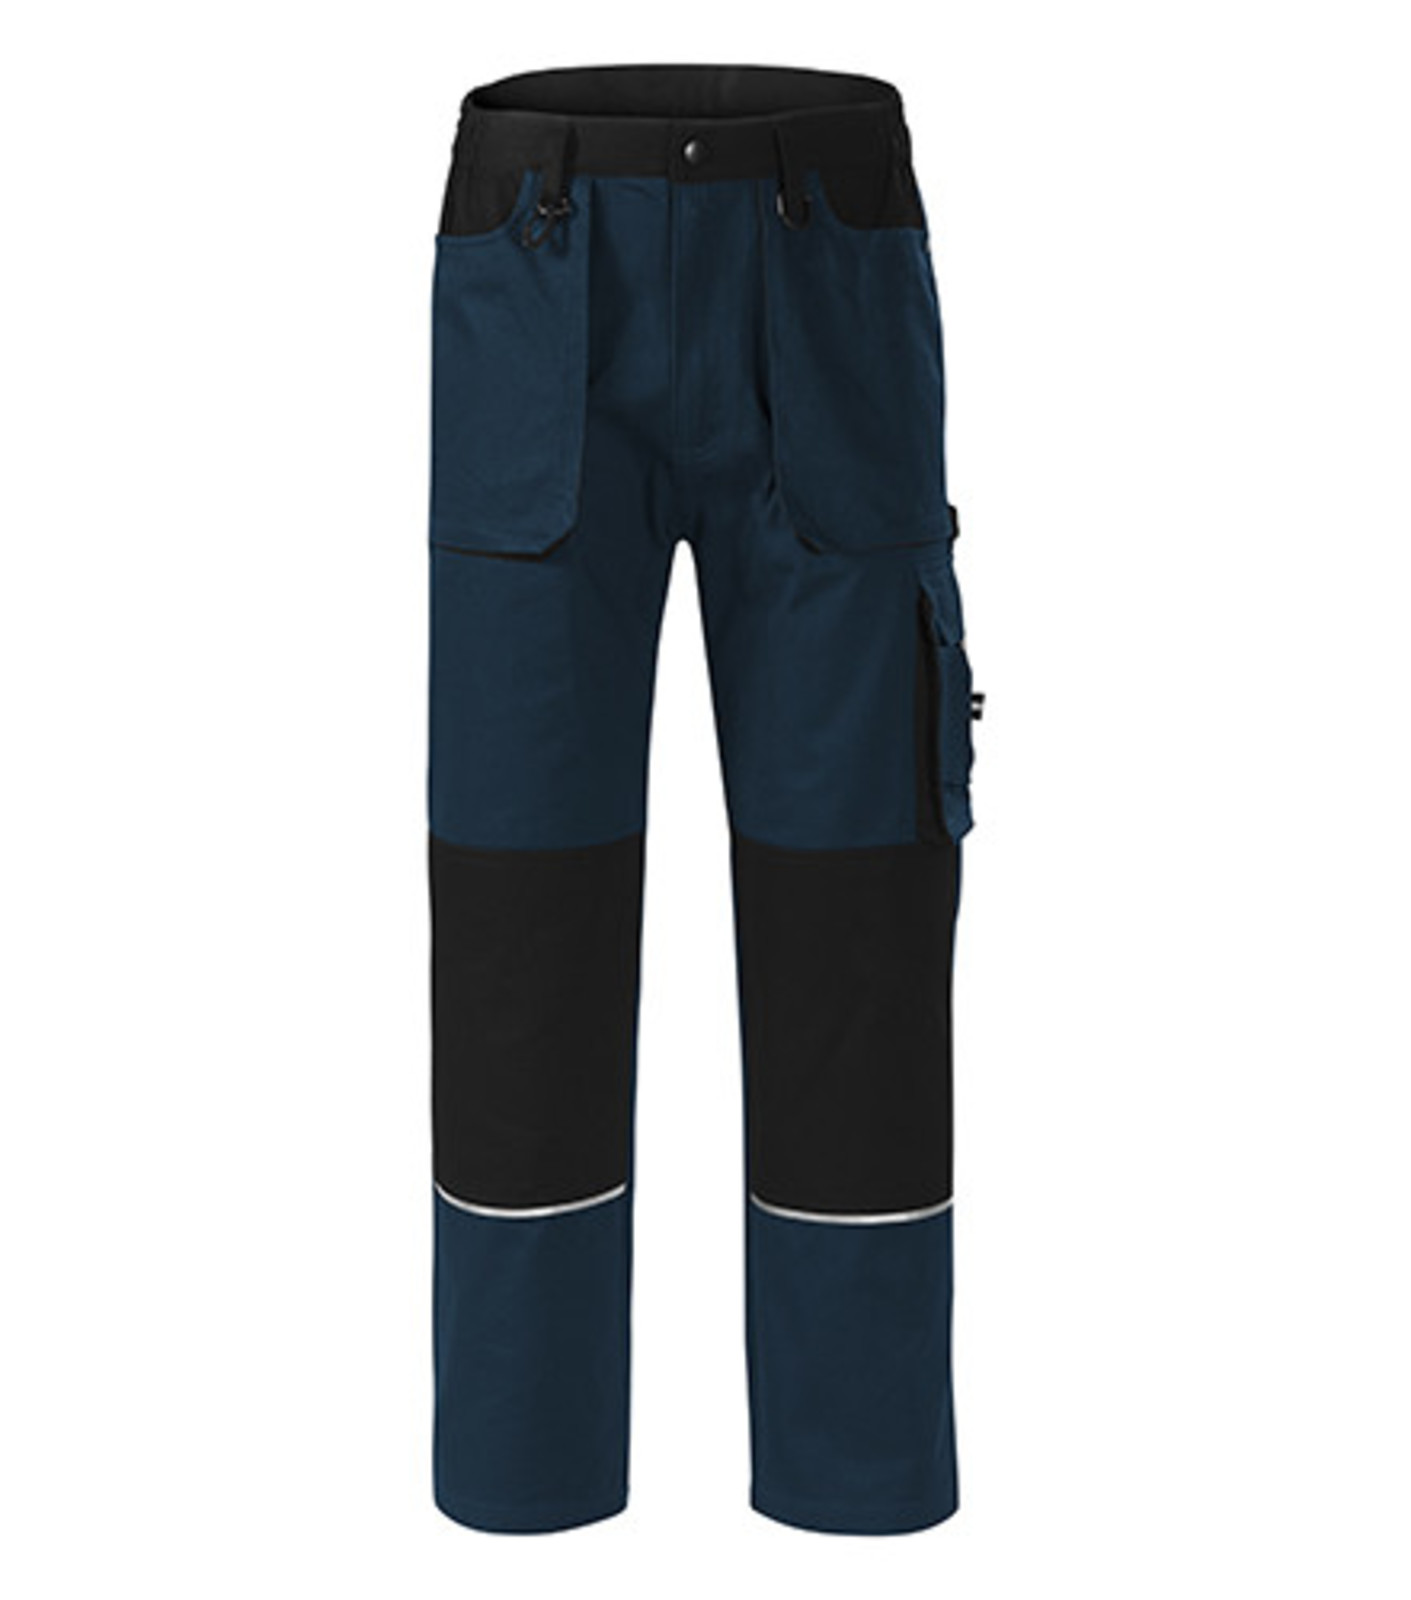 Montérkové nohavice Adler Woody W01 - veľkosť: 44-46, farba: tmavo modrá